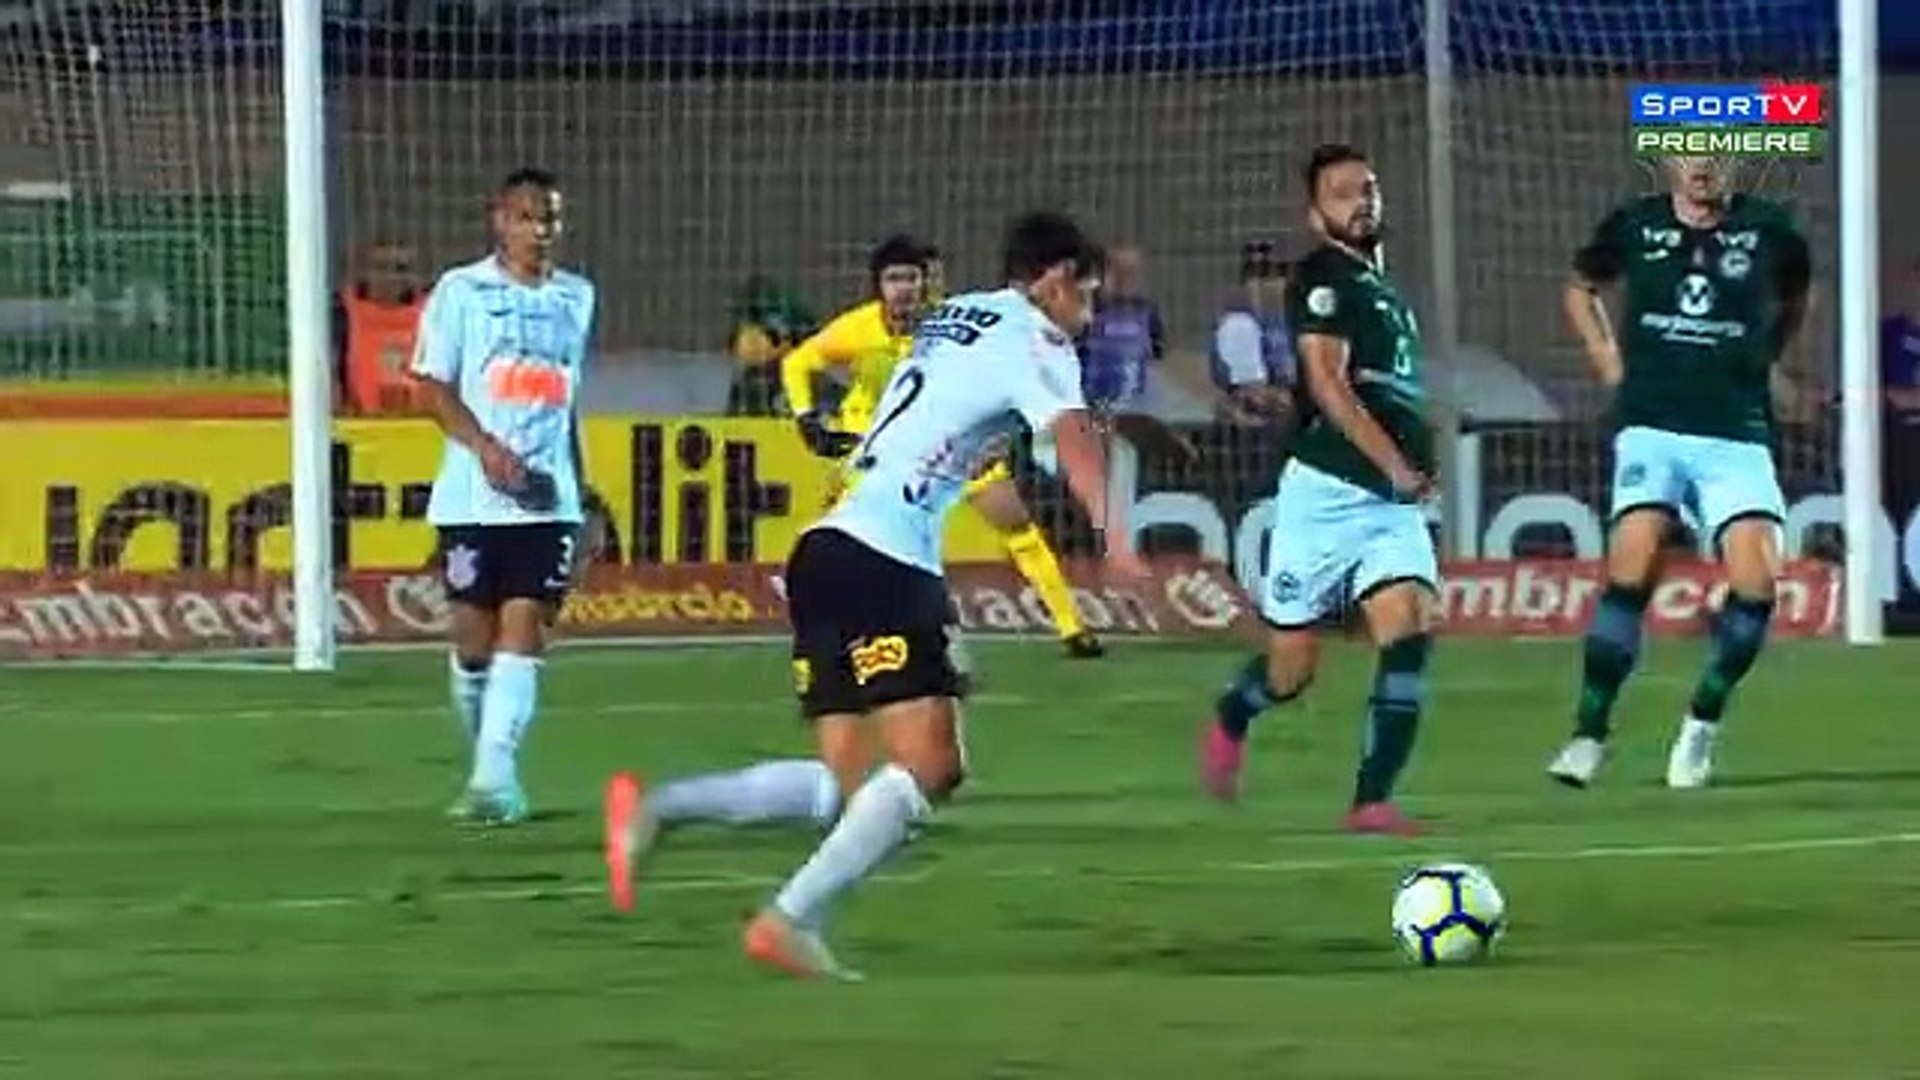 VÍDEO: Os melhores momentos do empate entre Corinthians e Goiás